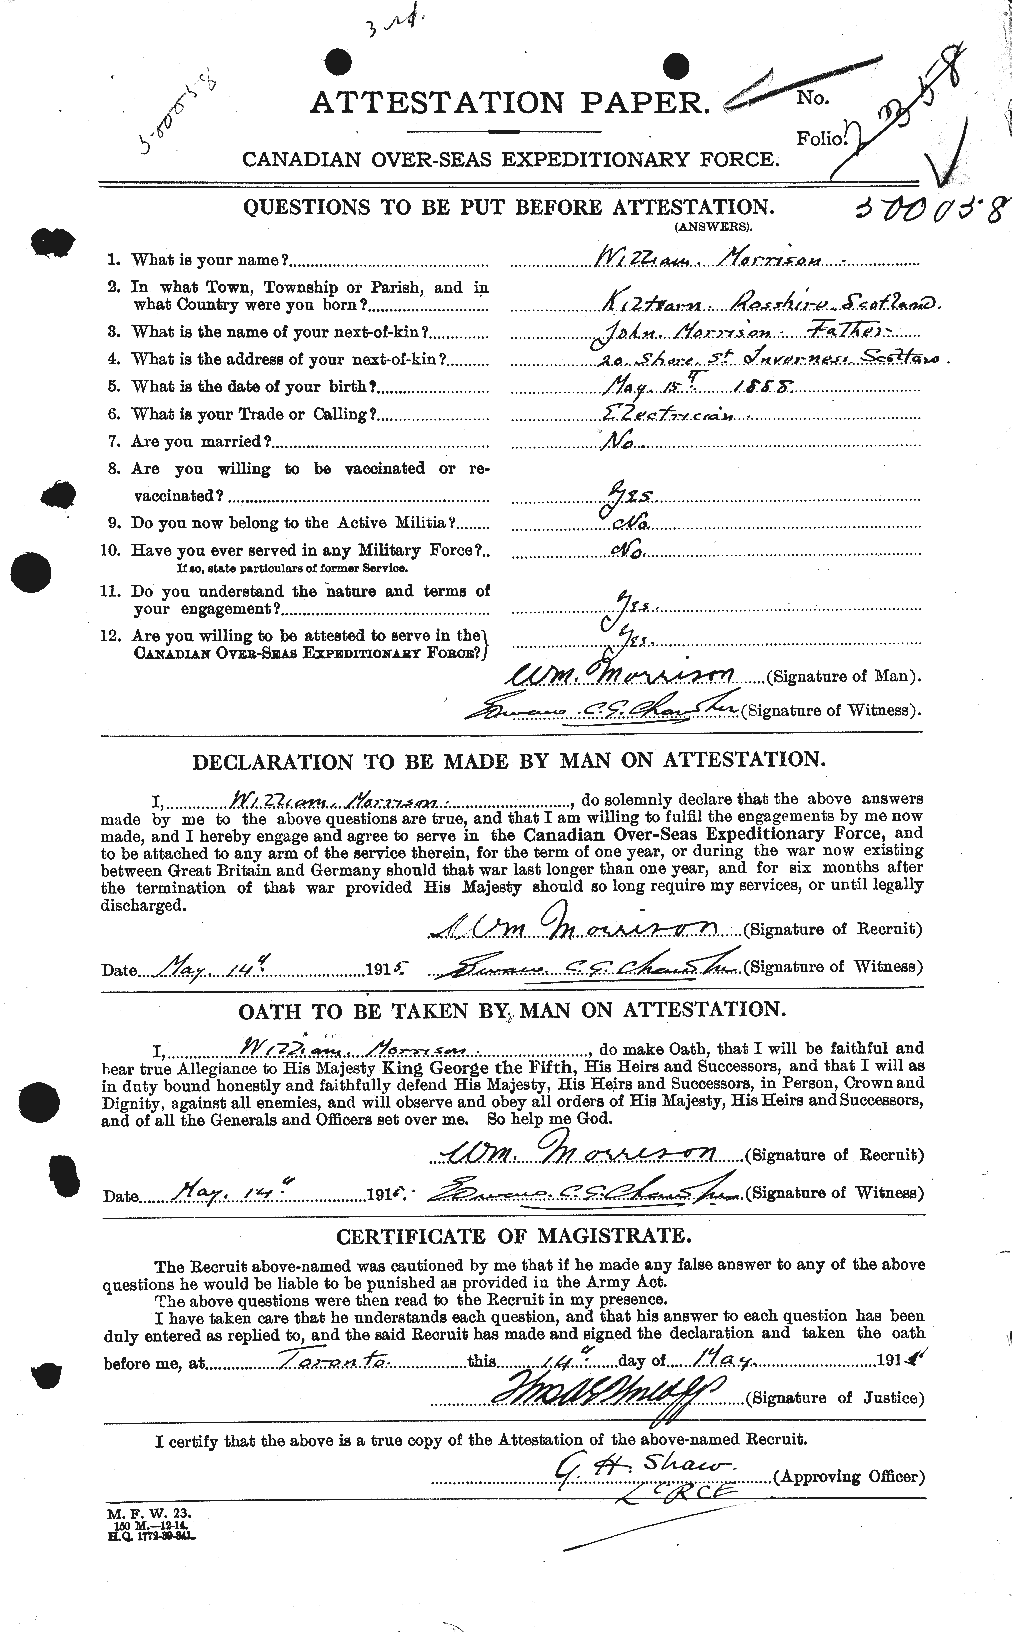 Dossiers du Personnel de la Première Guerre mondiale - CEC 509241a